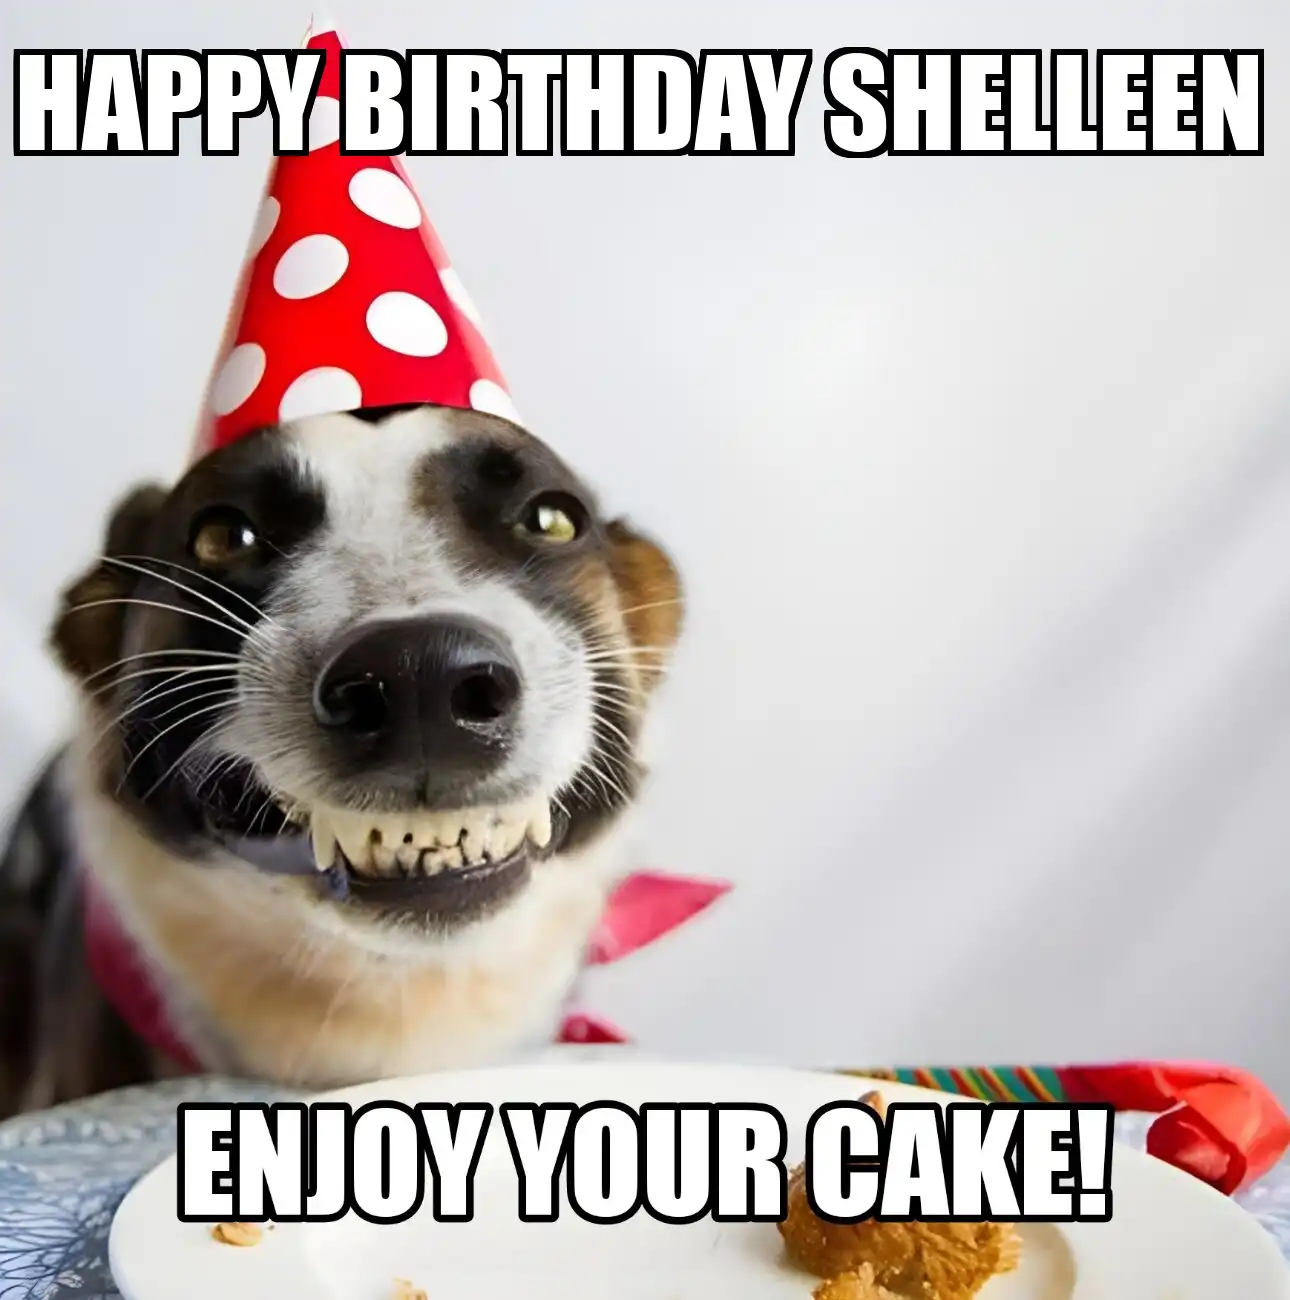 Happy Birthday Shelleen Enjoy Your Cake Dog Meme